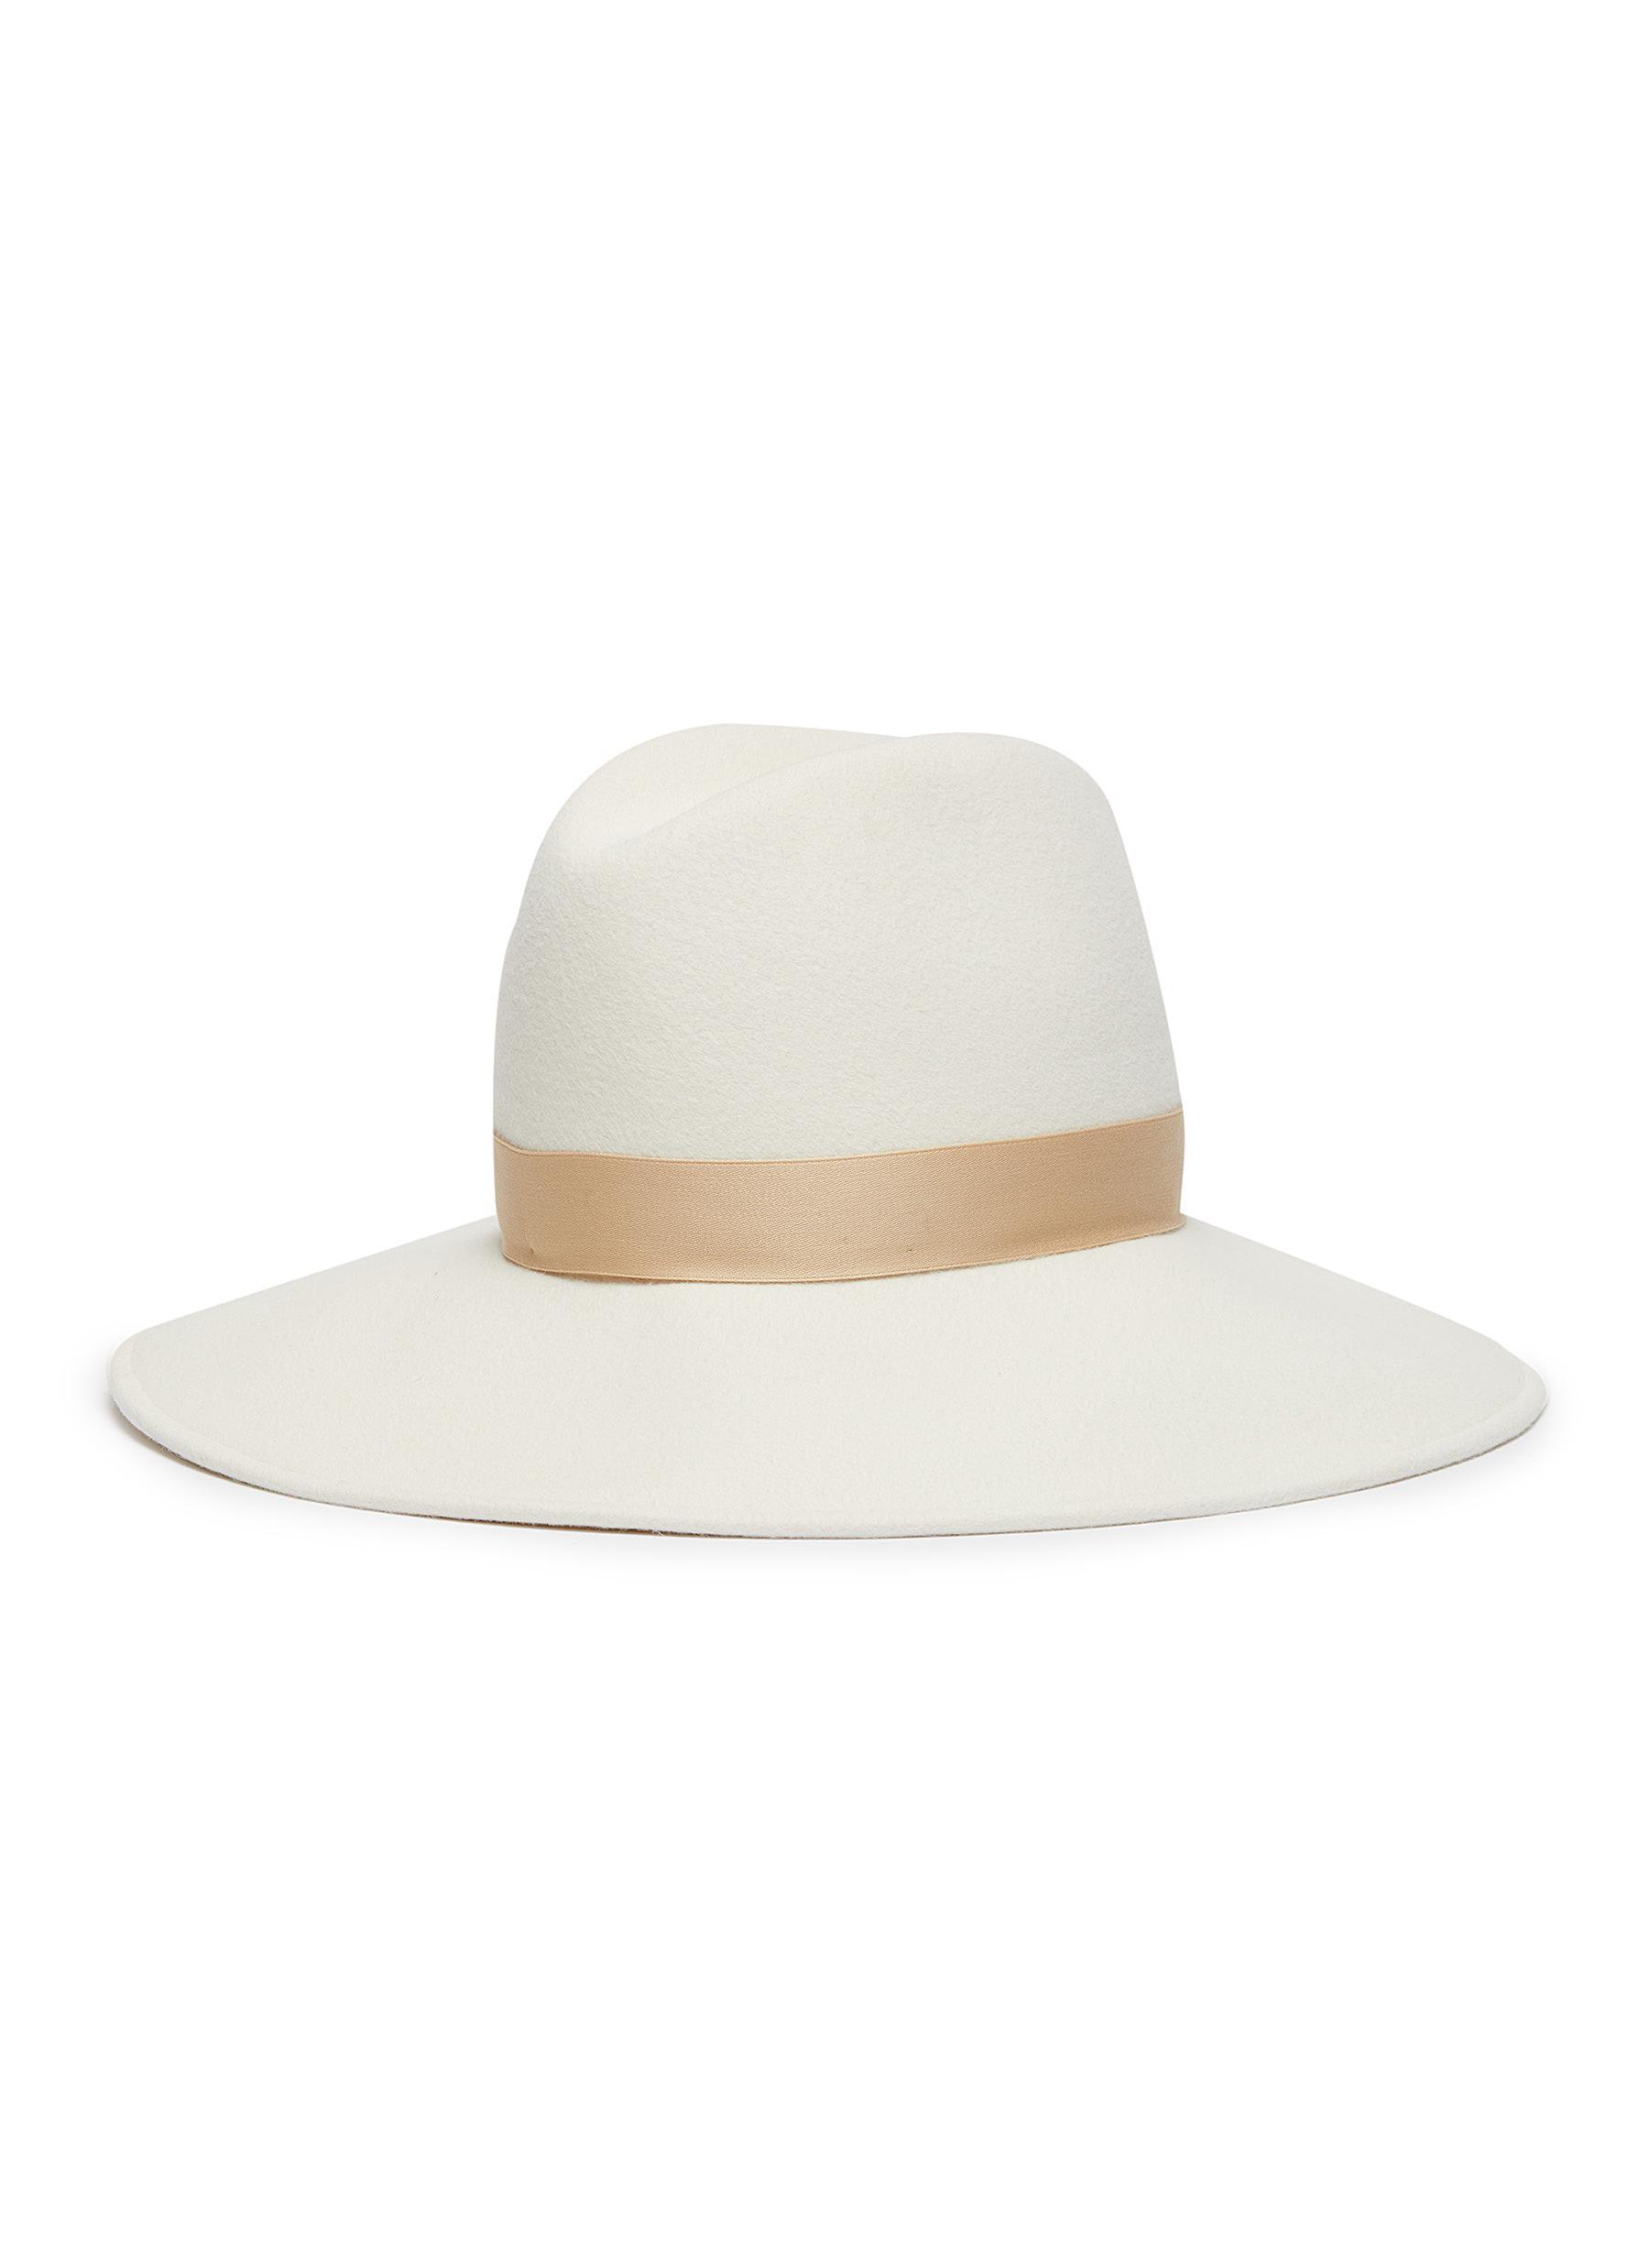 Gigi Burris Millinery 'requiem' Wool Felt Fedora Hat in White - Lyst